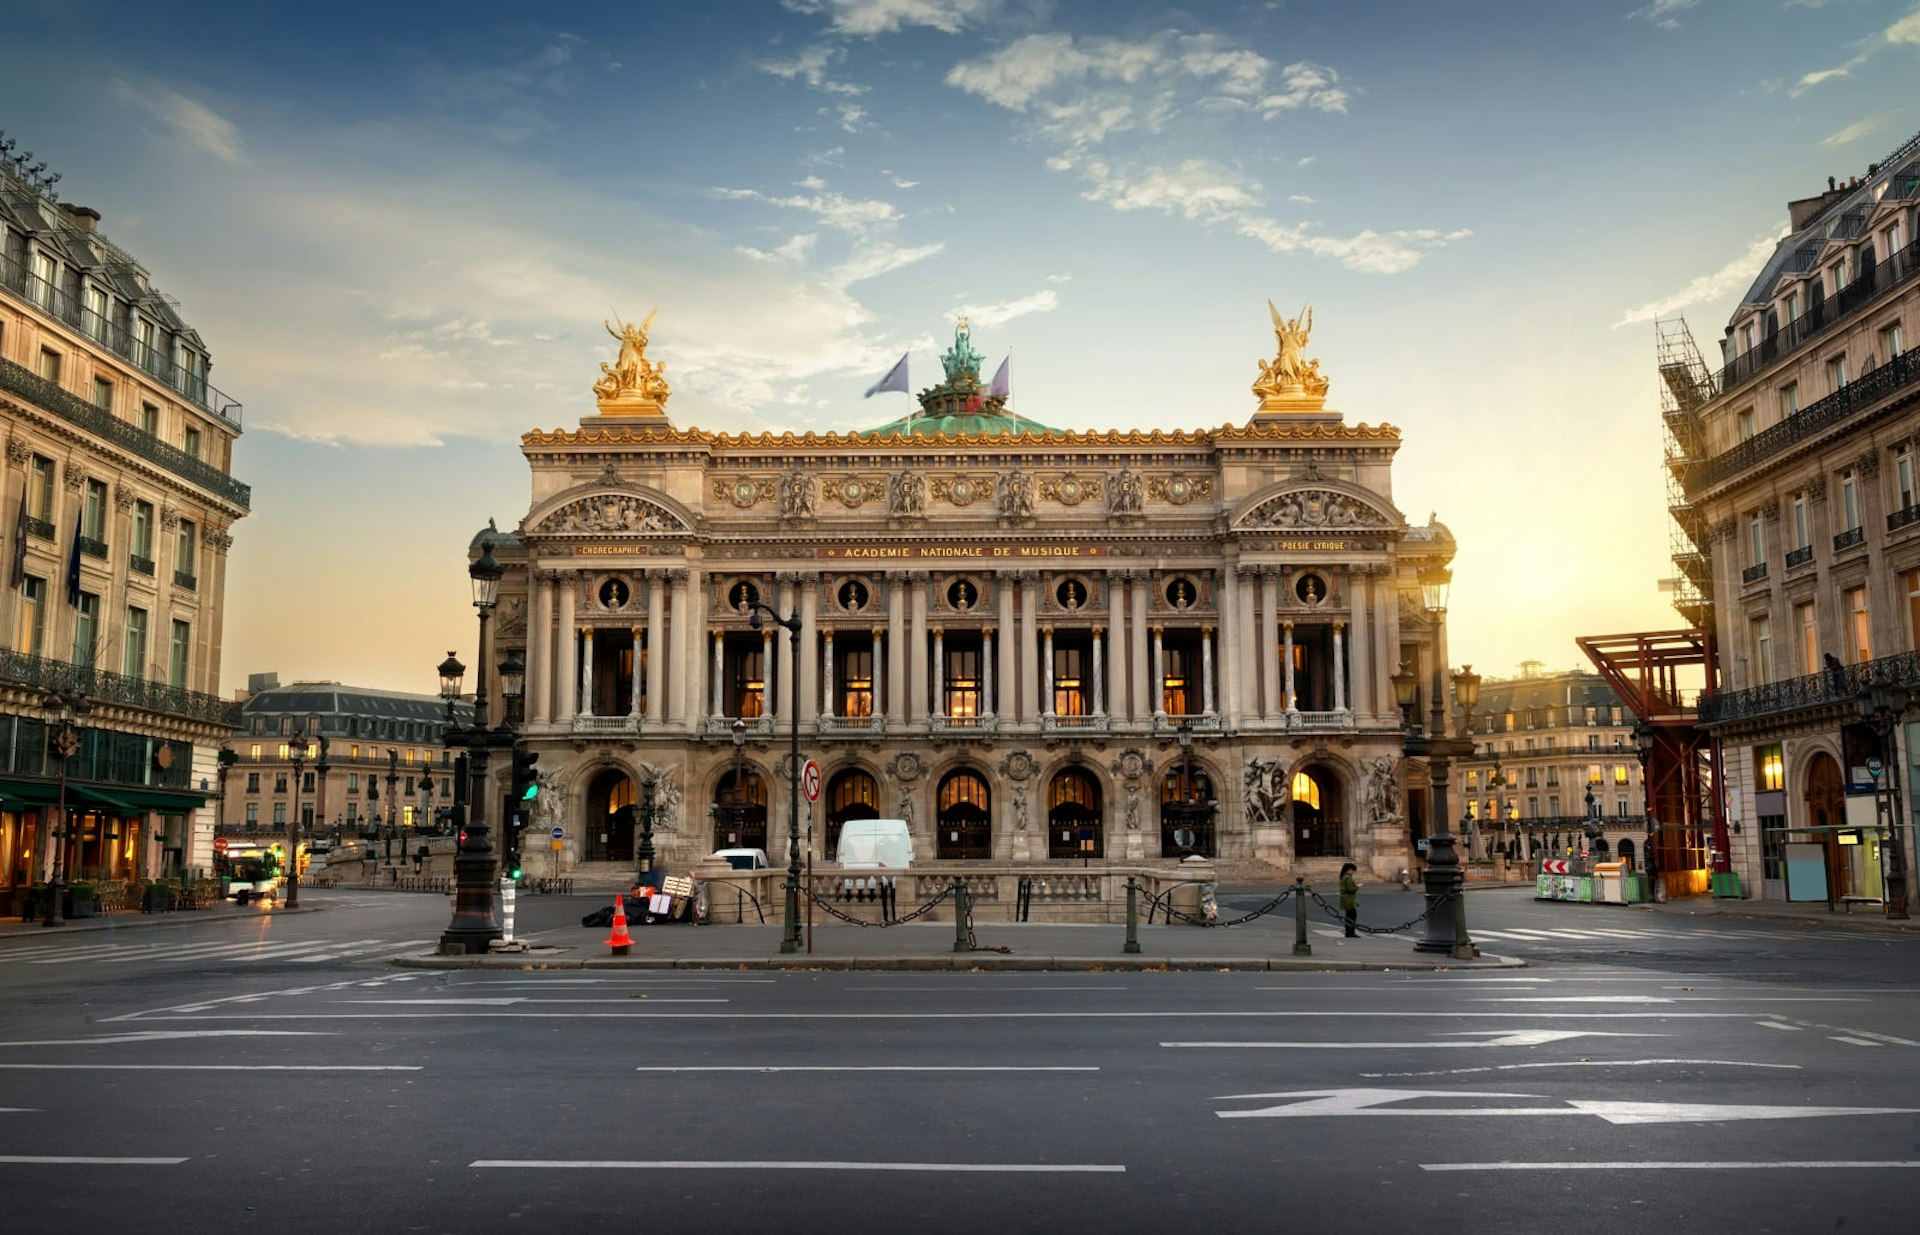 The opulent Palais Garnier opera house in Paris